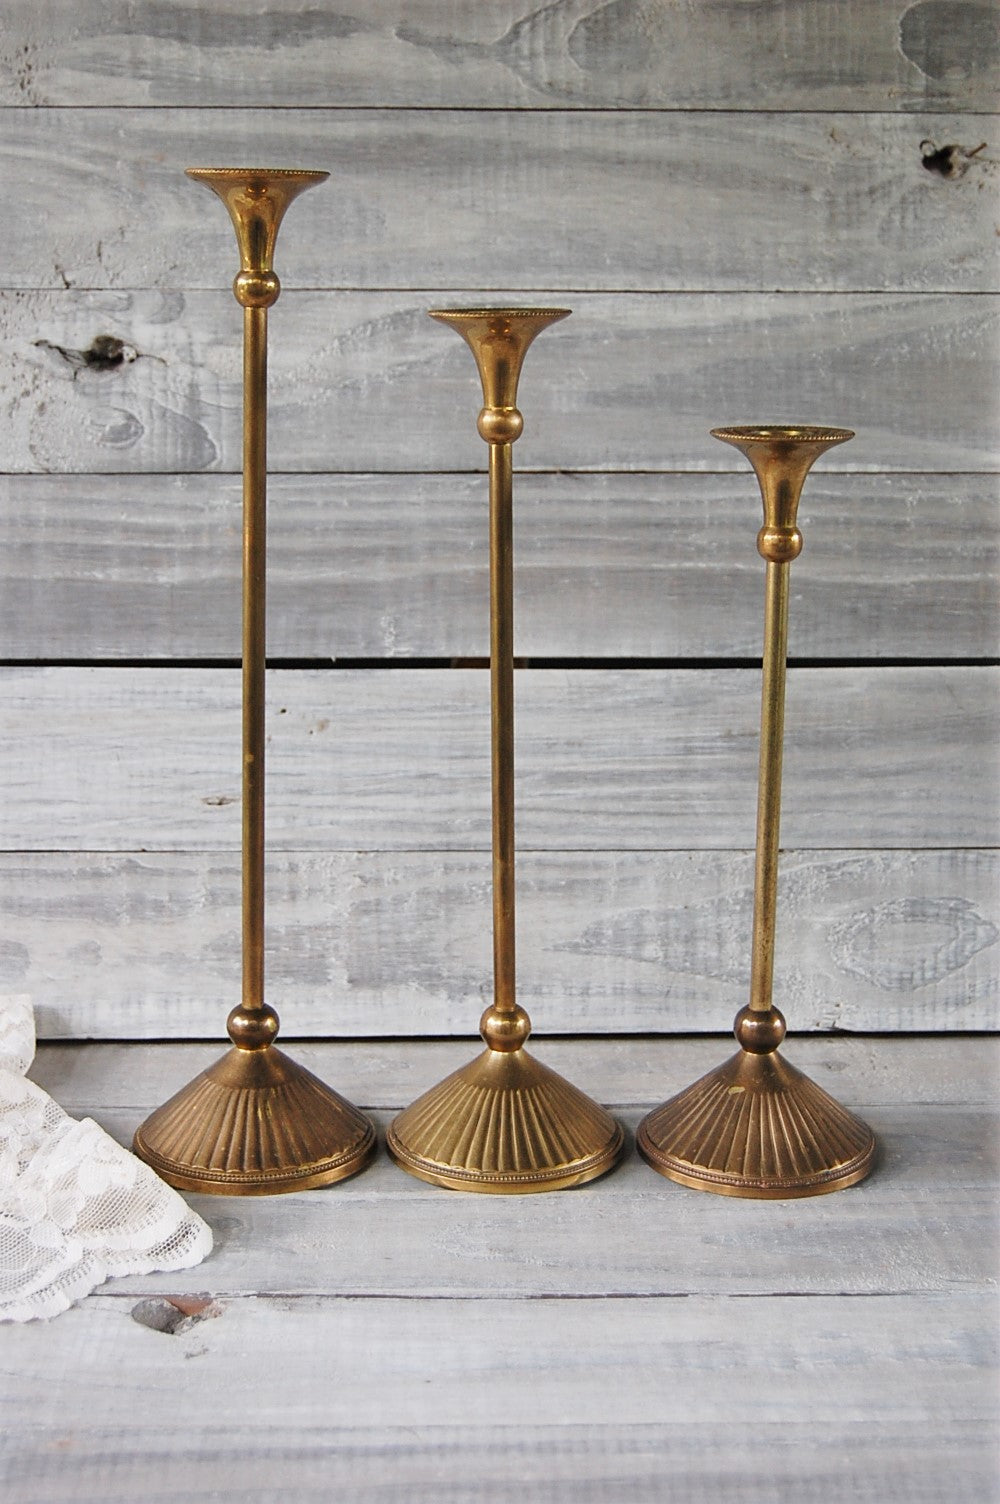 Tall brass candlesticks